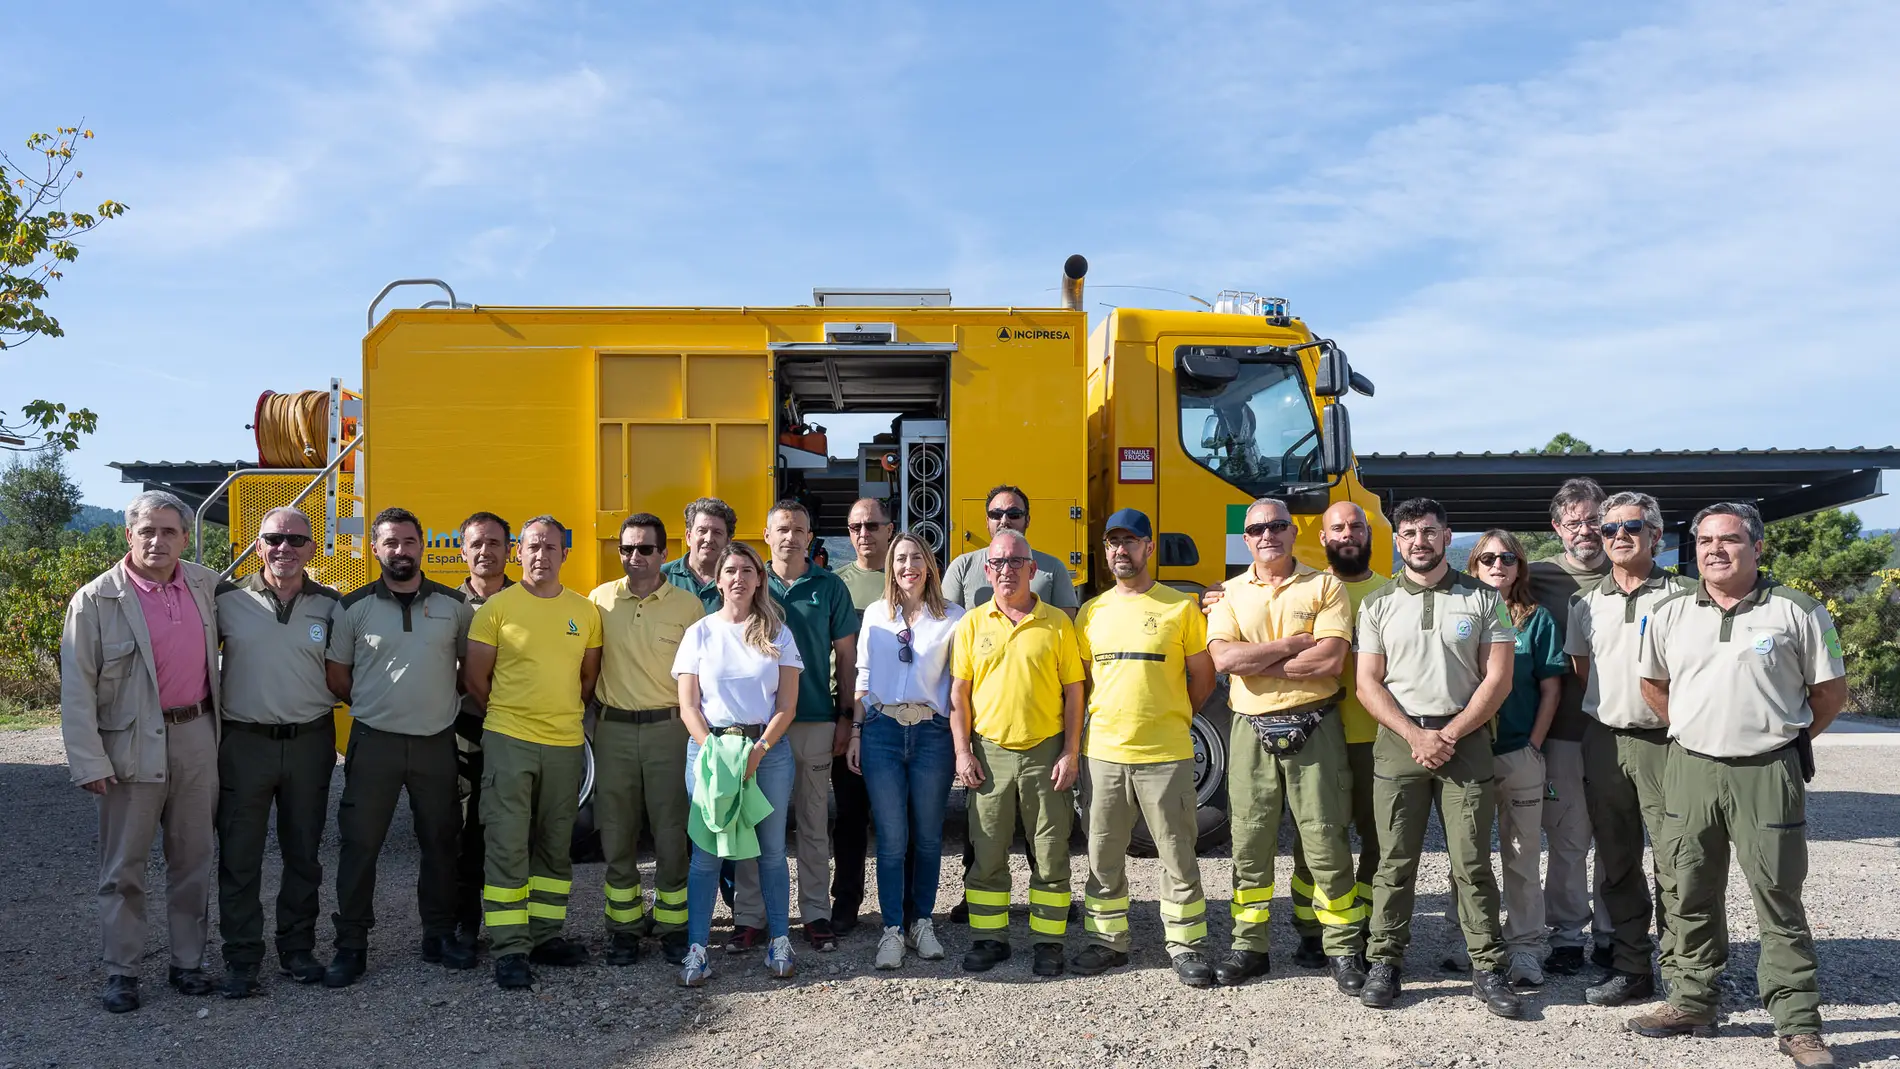 La presidenta visita junto a la consejera de Gestión Forestal los trabajos de recuperación de Las Hurdes y Gata tras los incendios